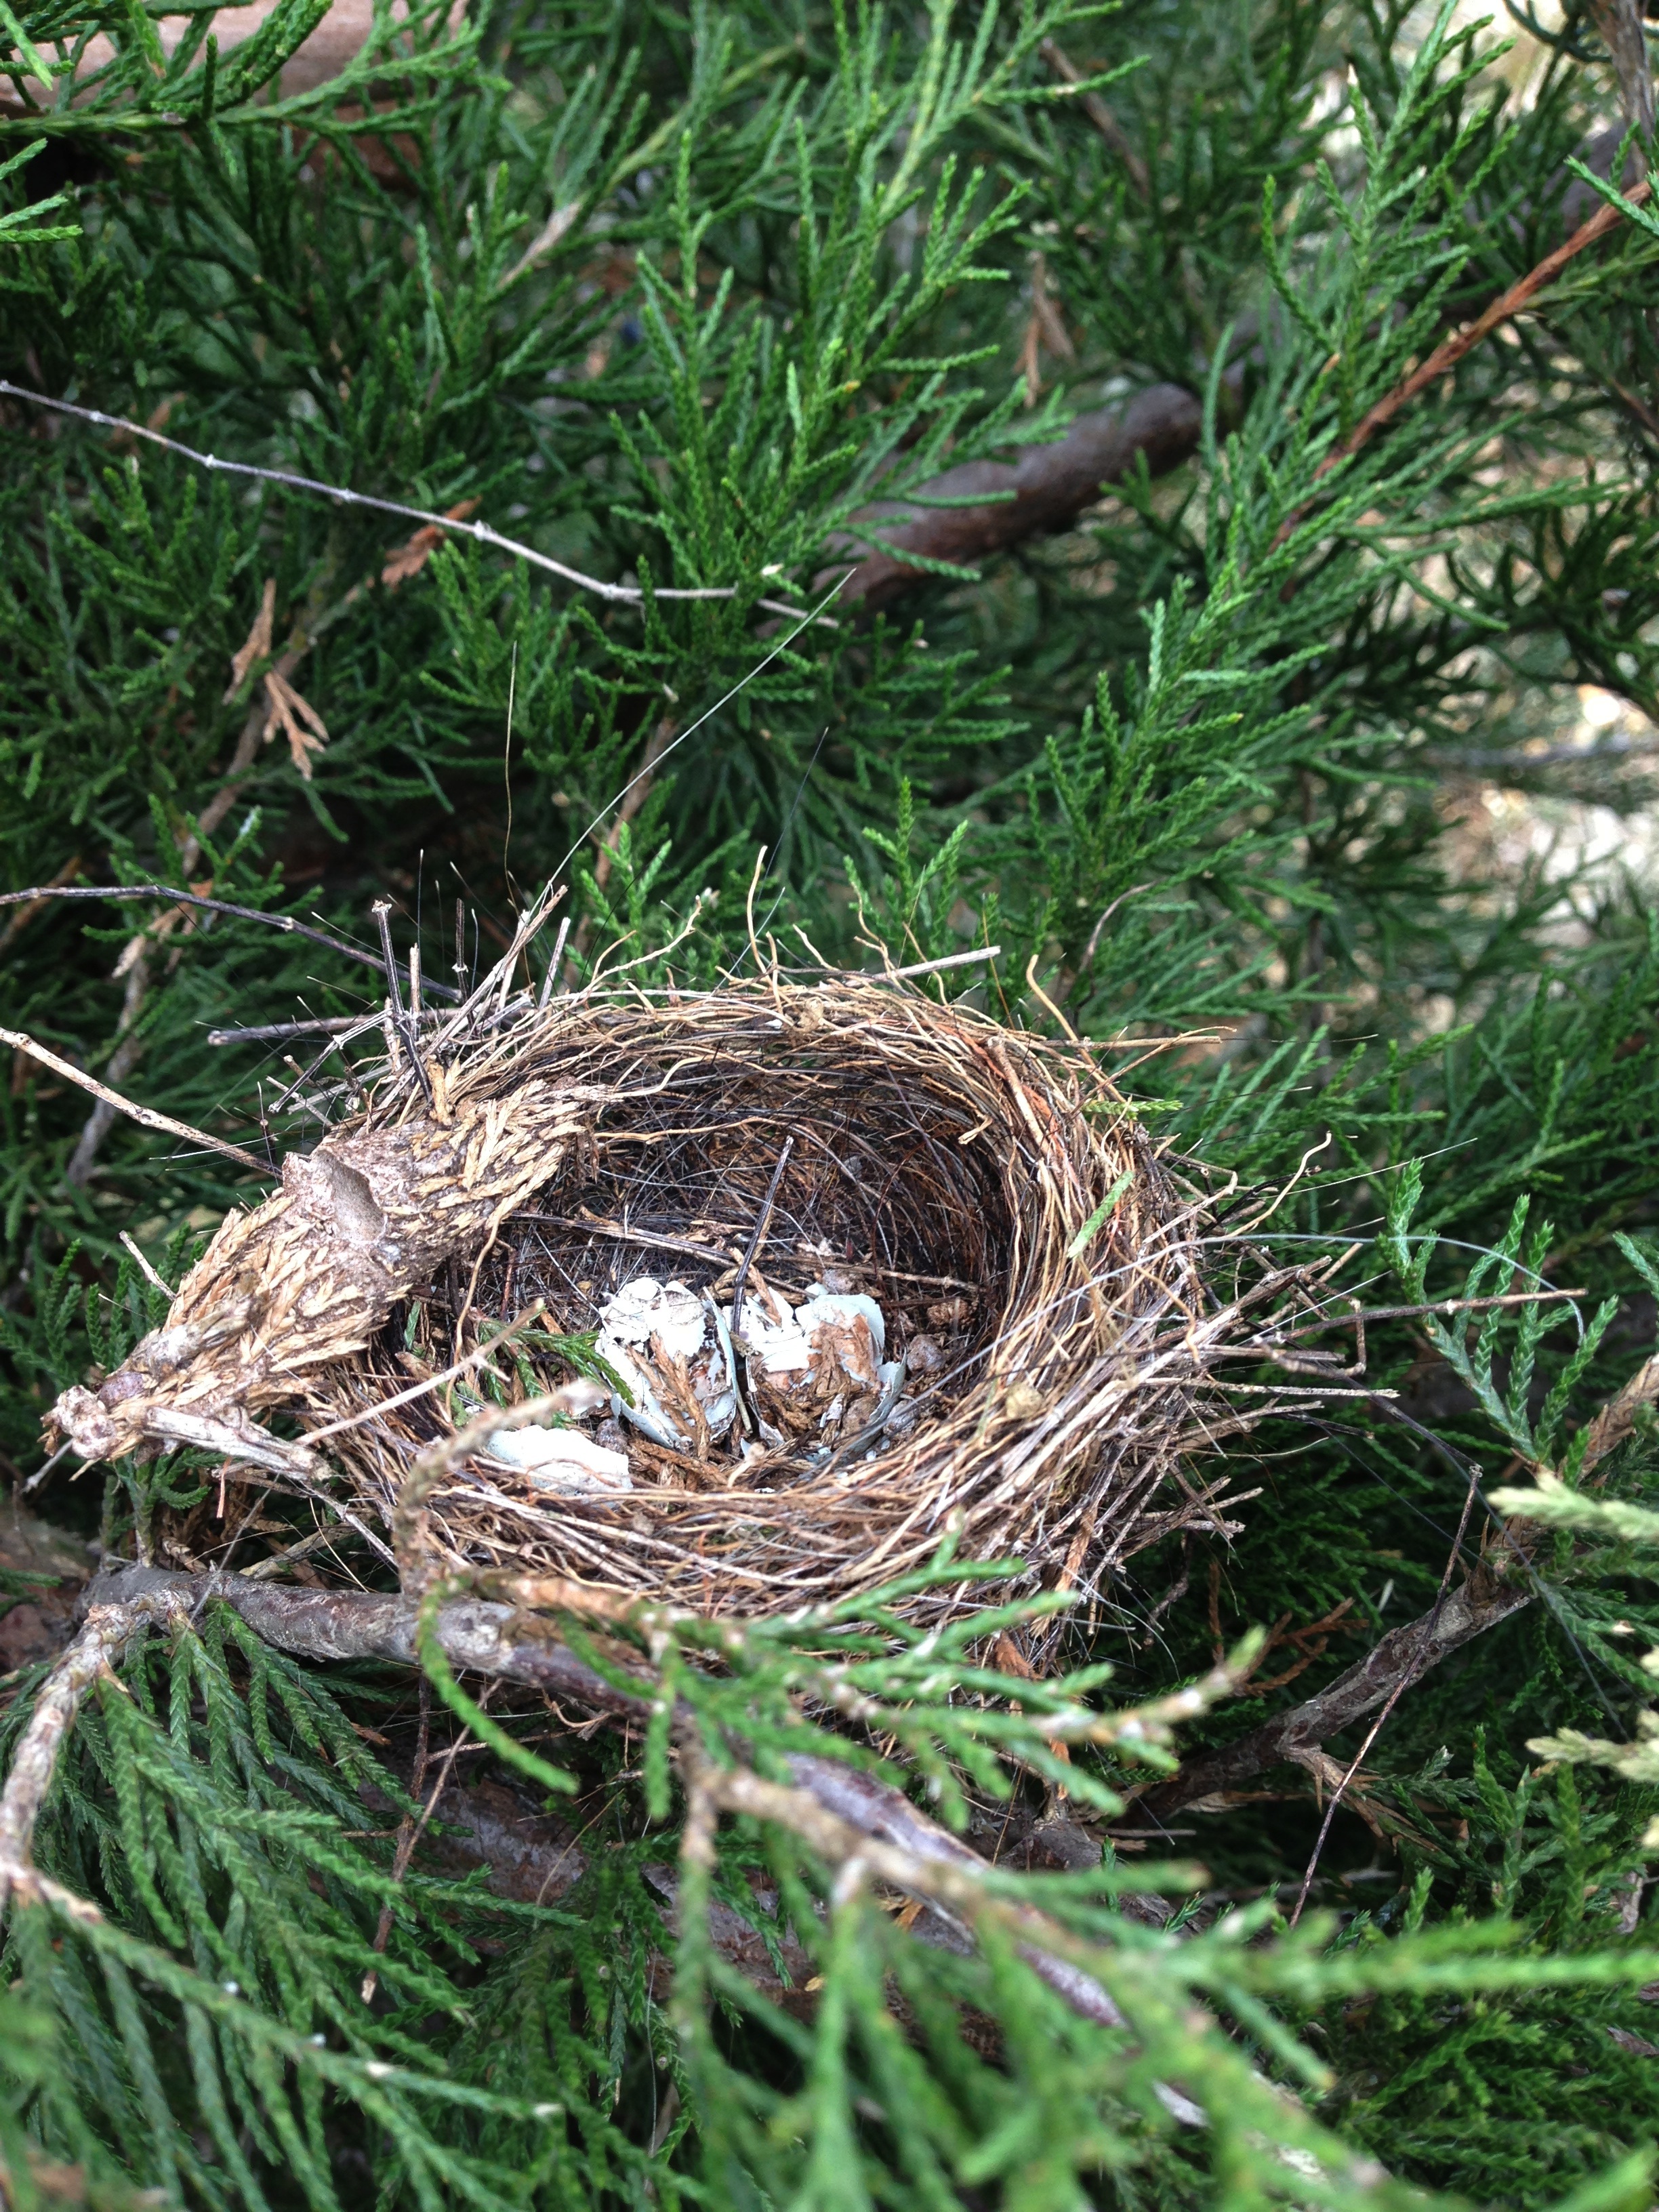 Found nest